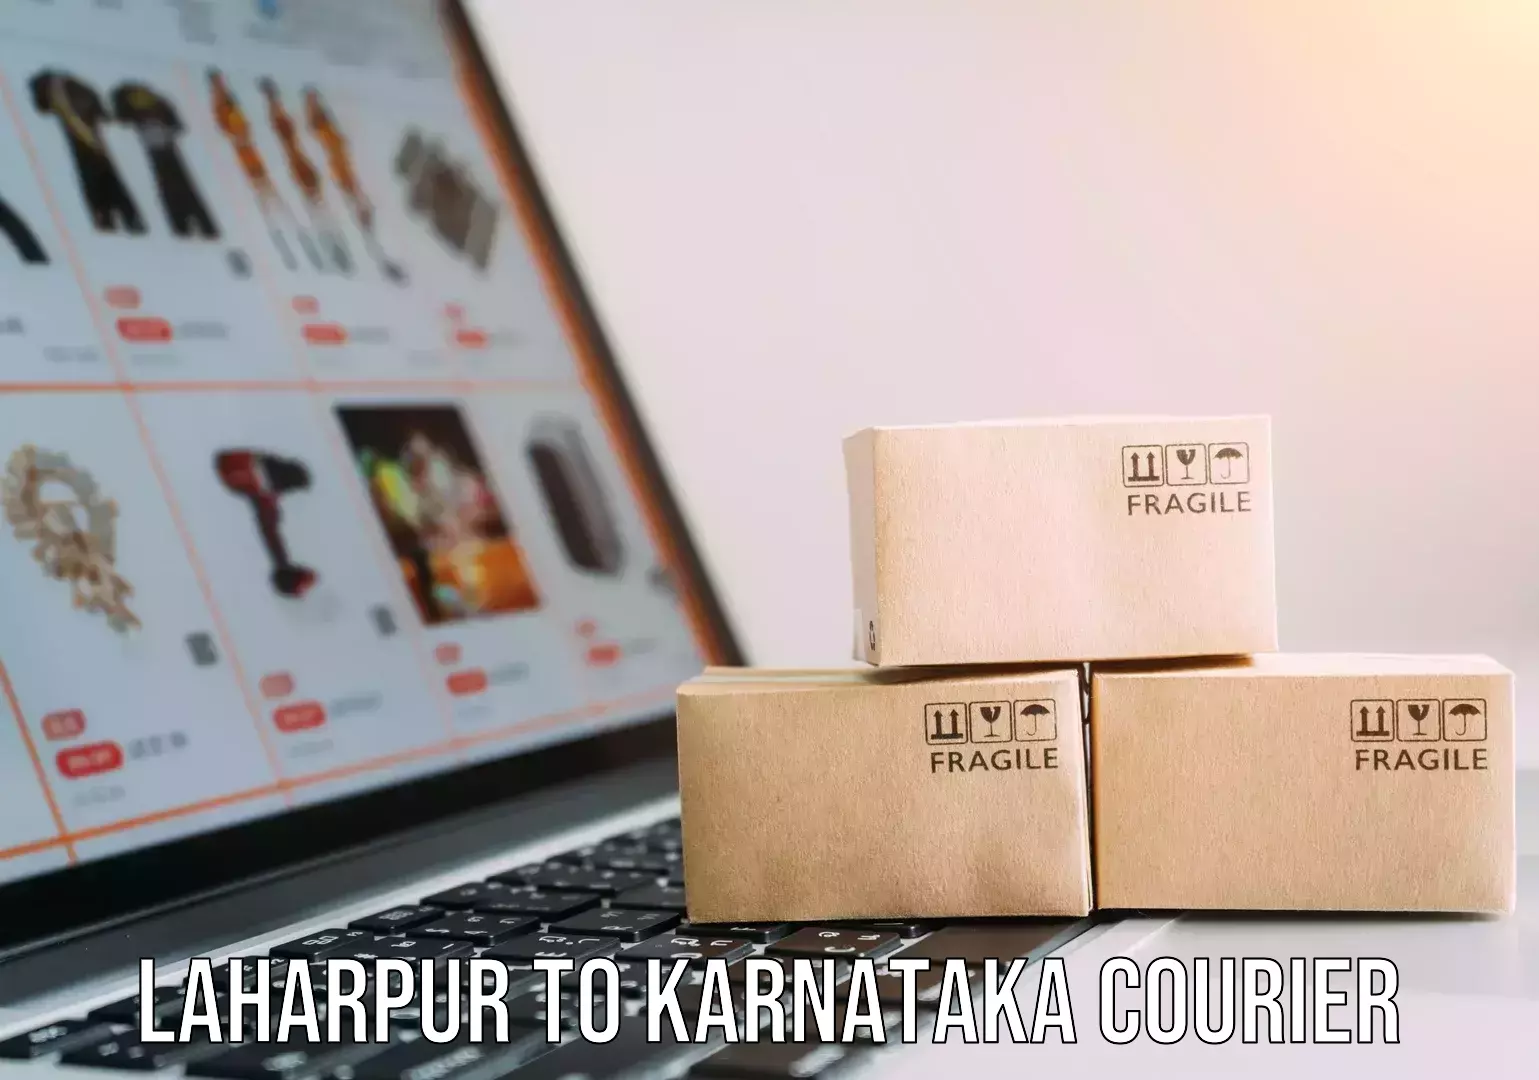 Furniture transport experts Laharpur to Karnataka